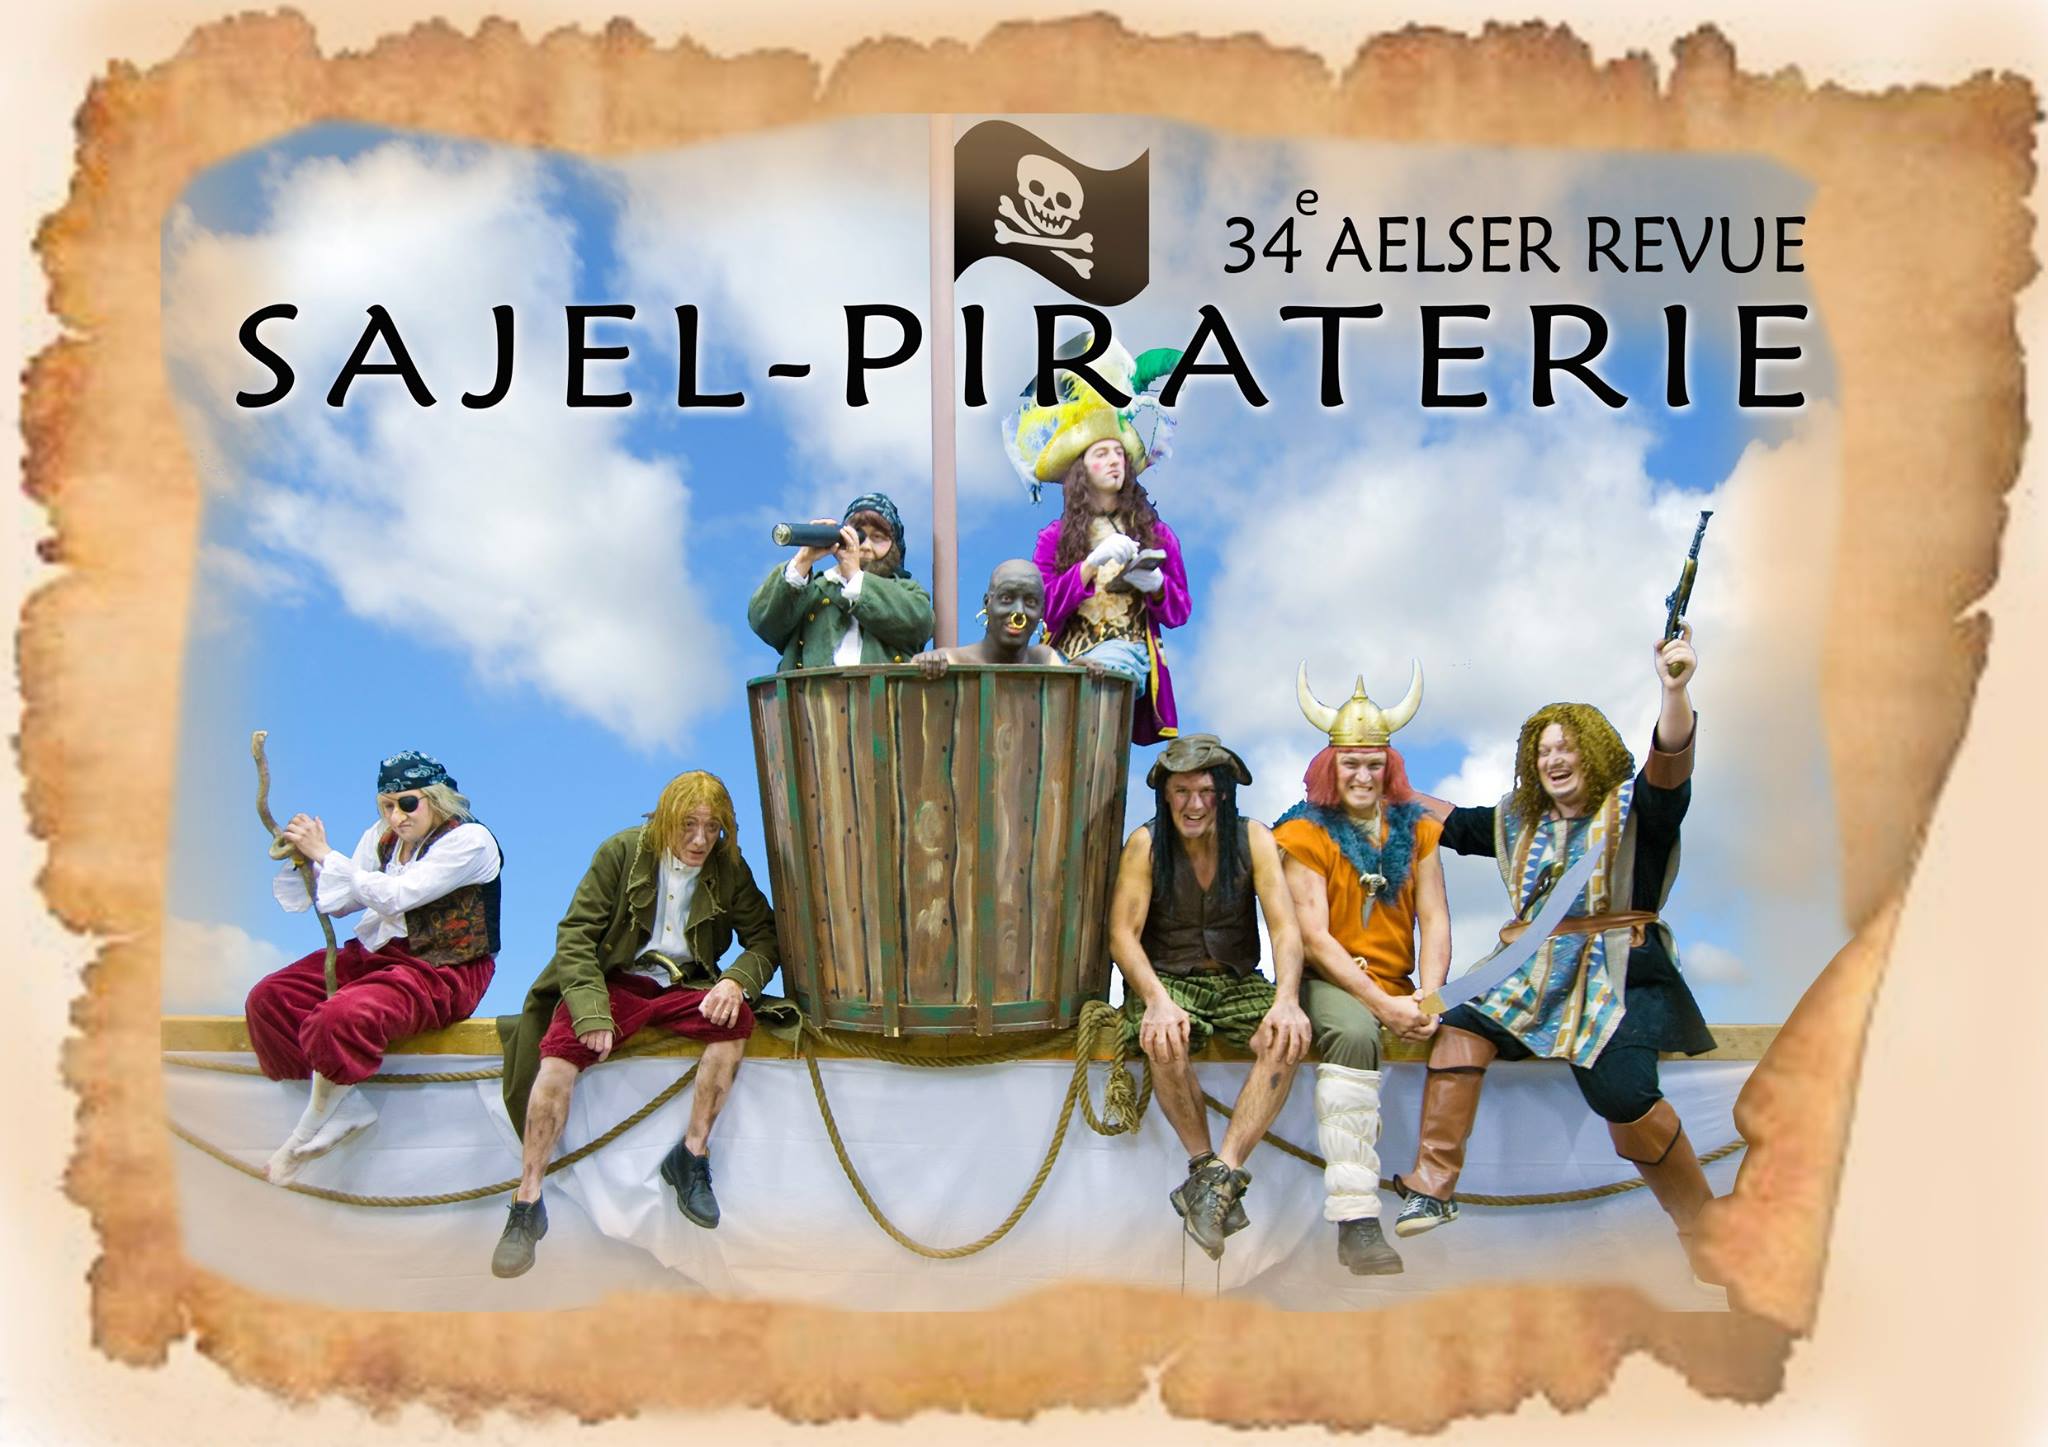 2011-Sajel-piraterie